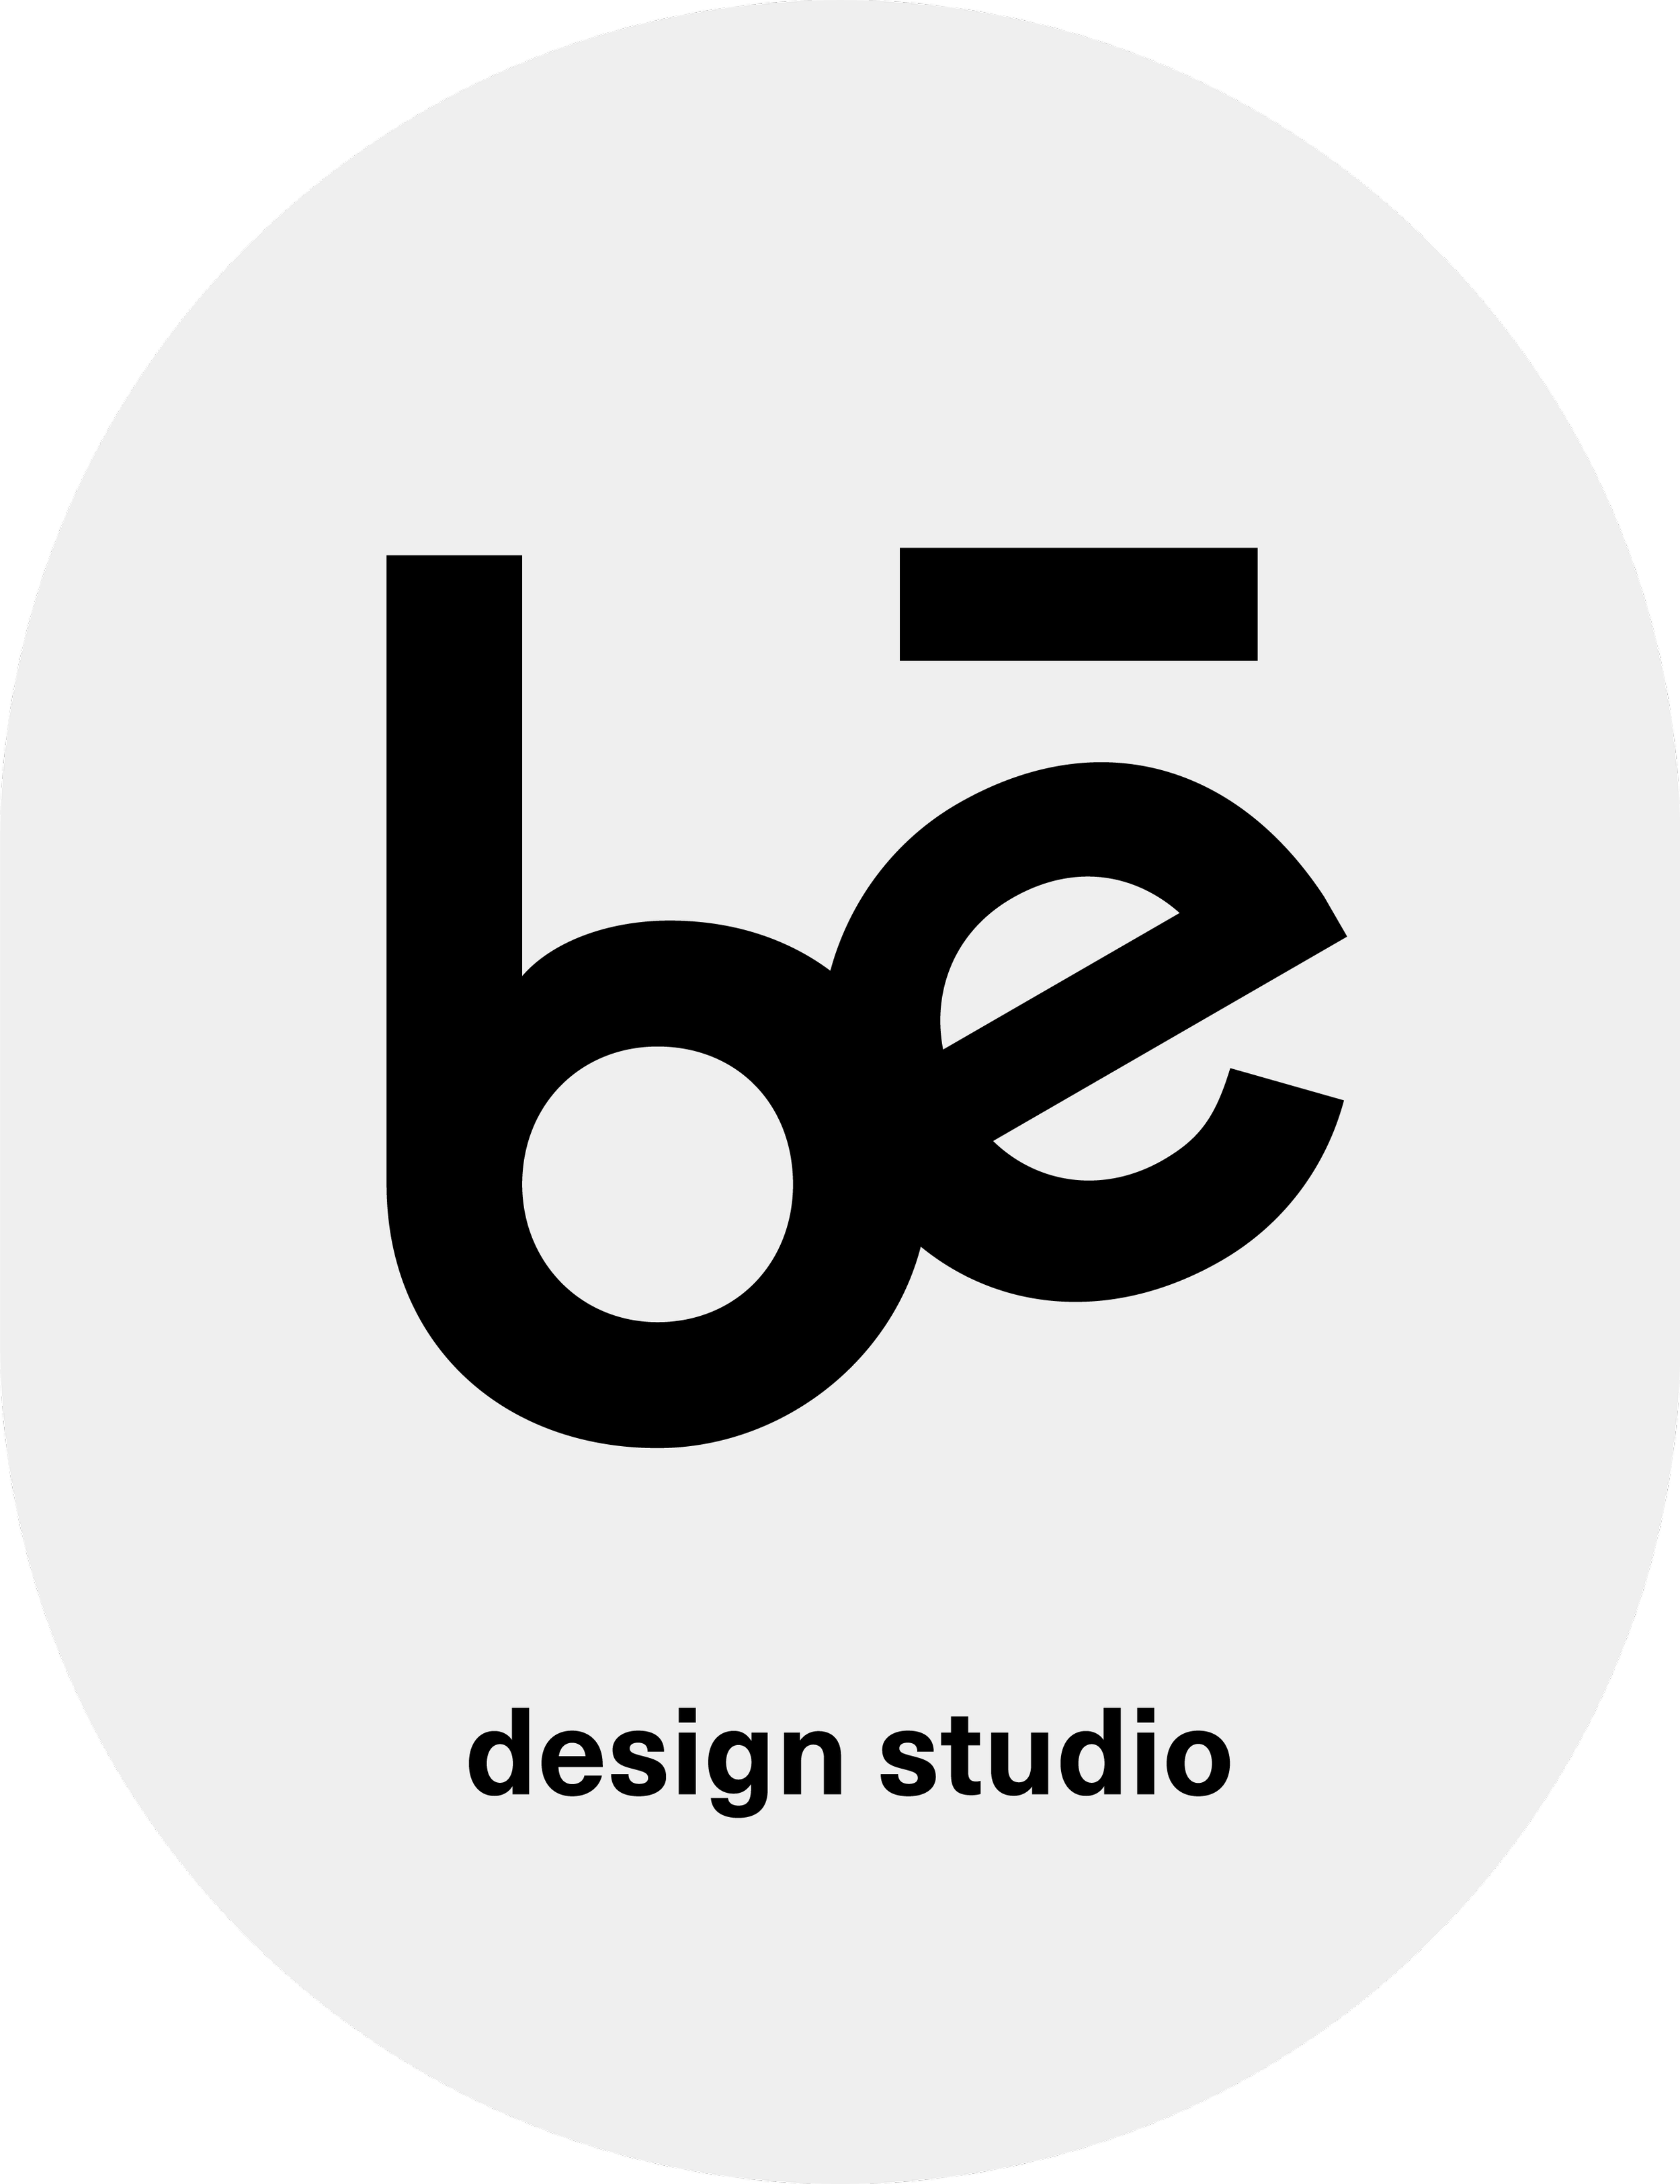 be design studio